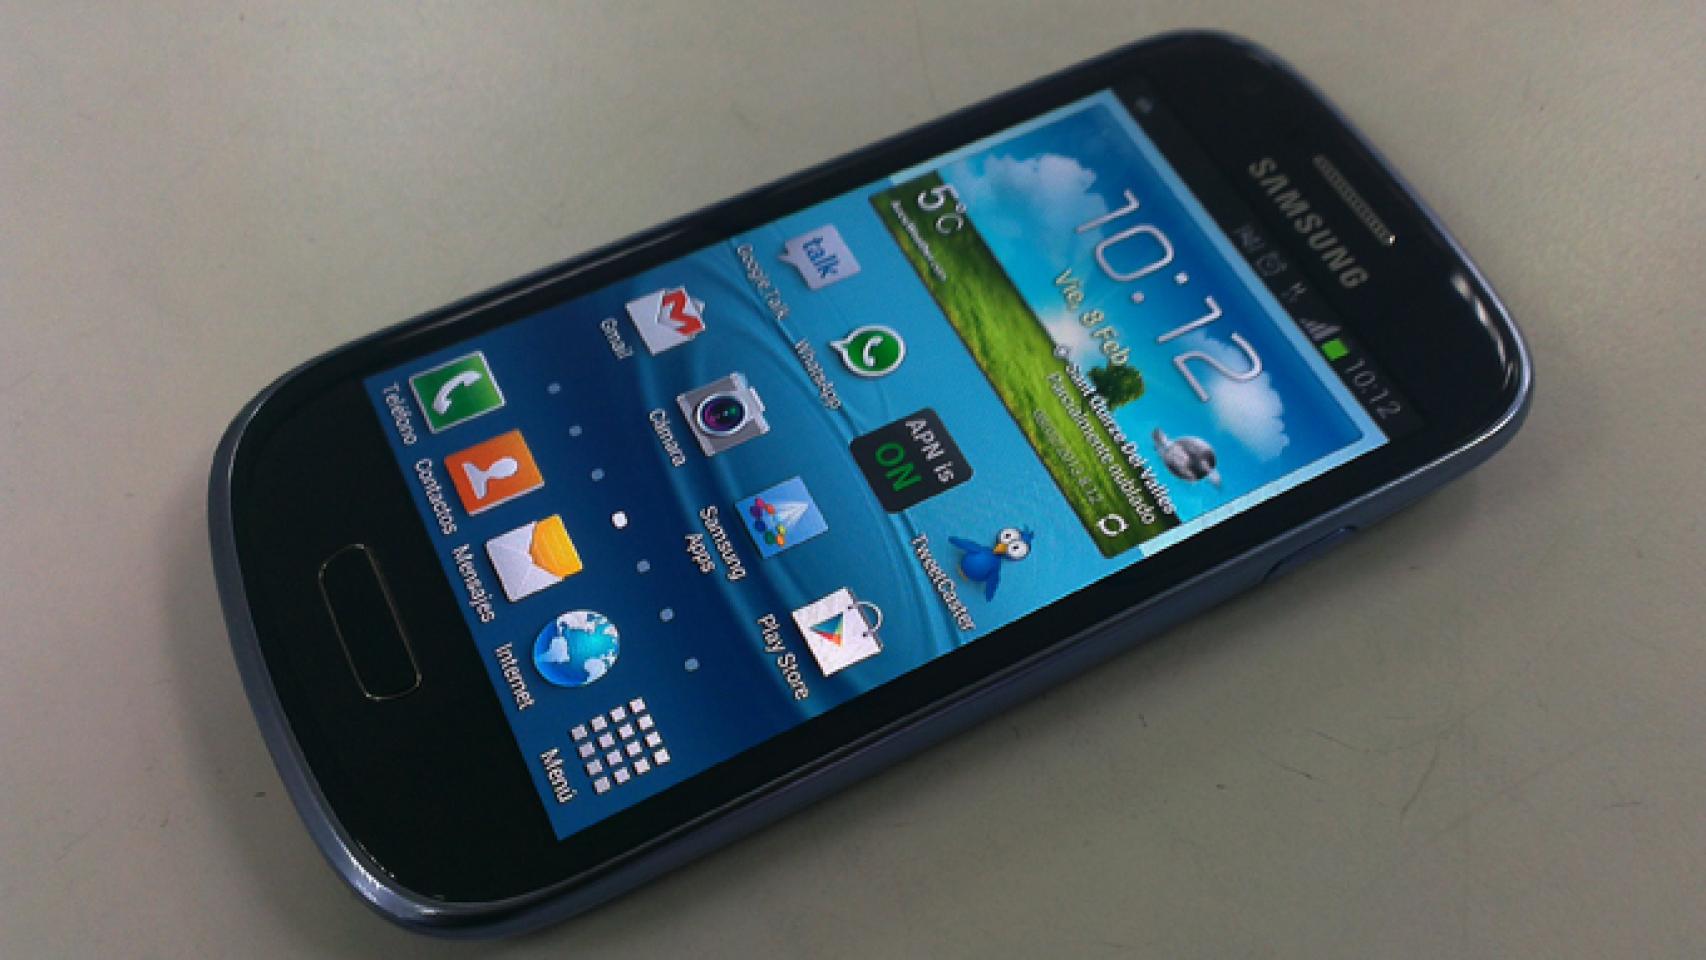 Samsung Galaxy S3 Mini: Análisis y experiencia de uso